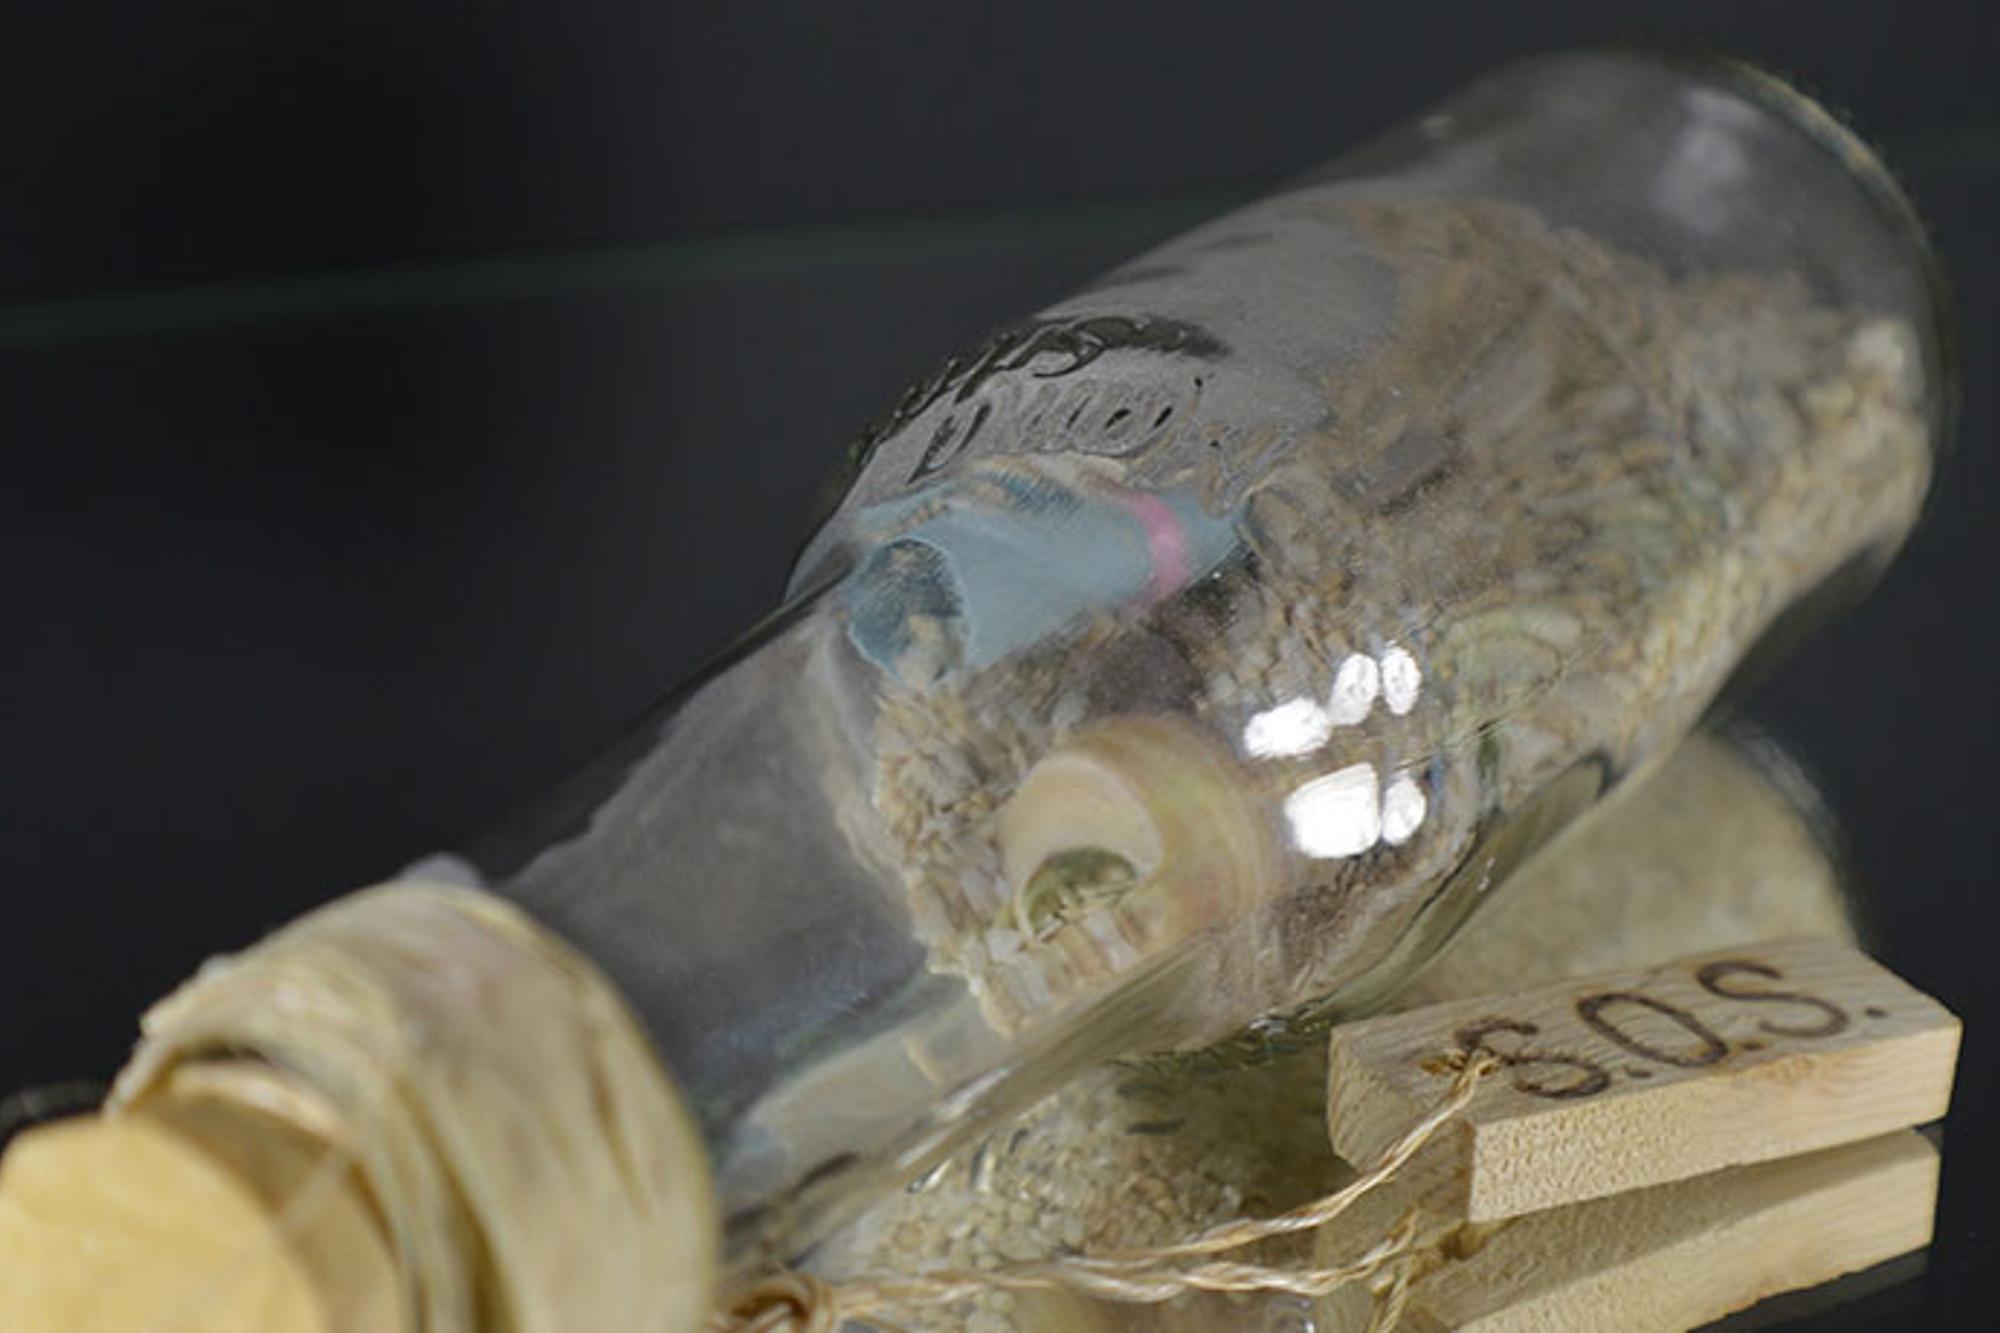 En glasflaska med en lapp i. På flaskan hänger det ett snöre som sitter fast i en liten träbit med texten "SOS".